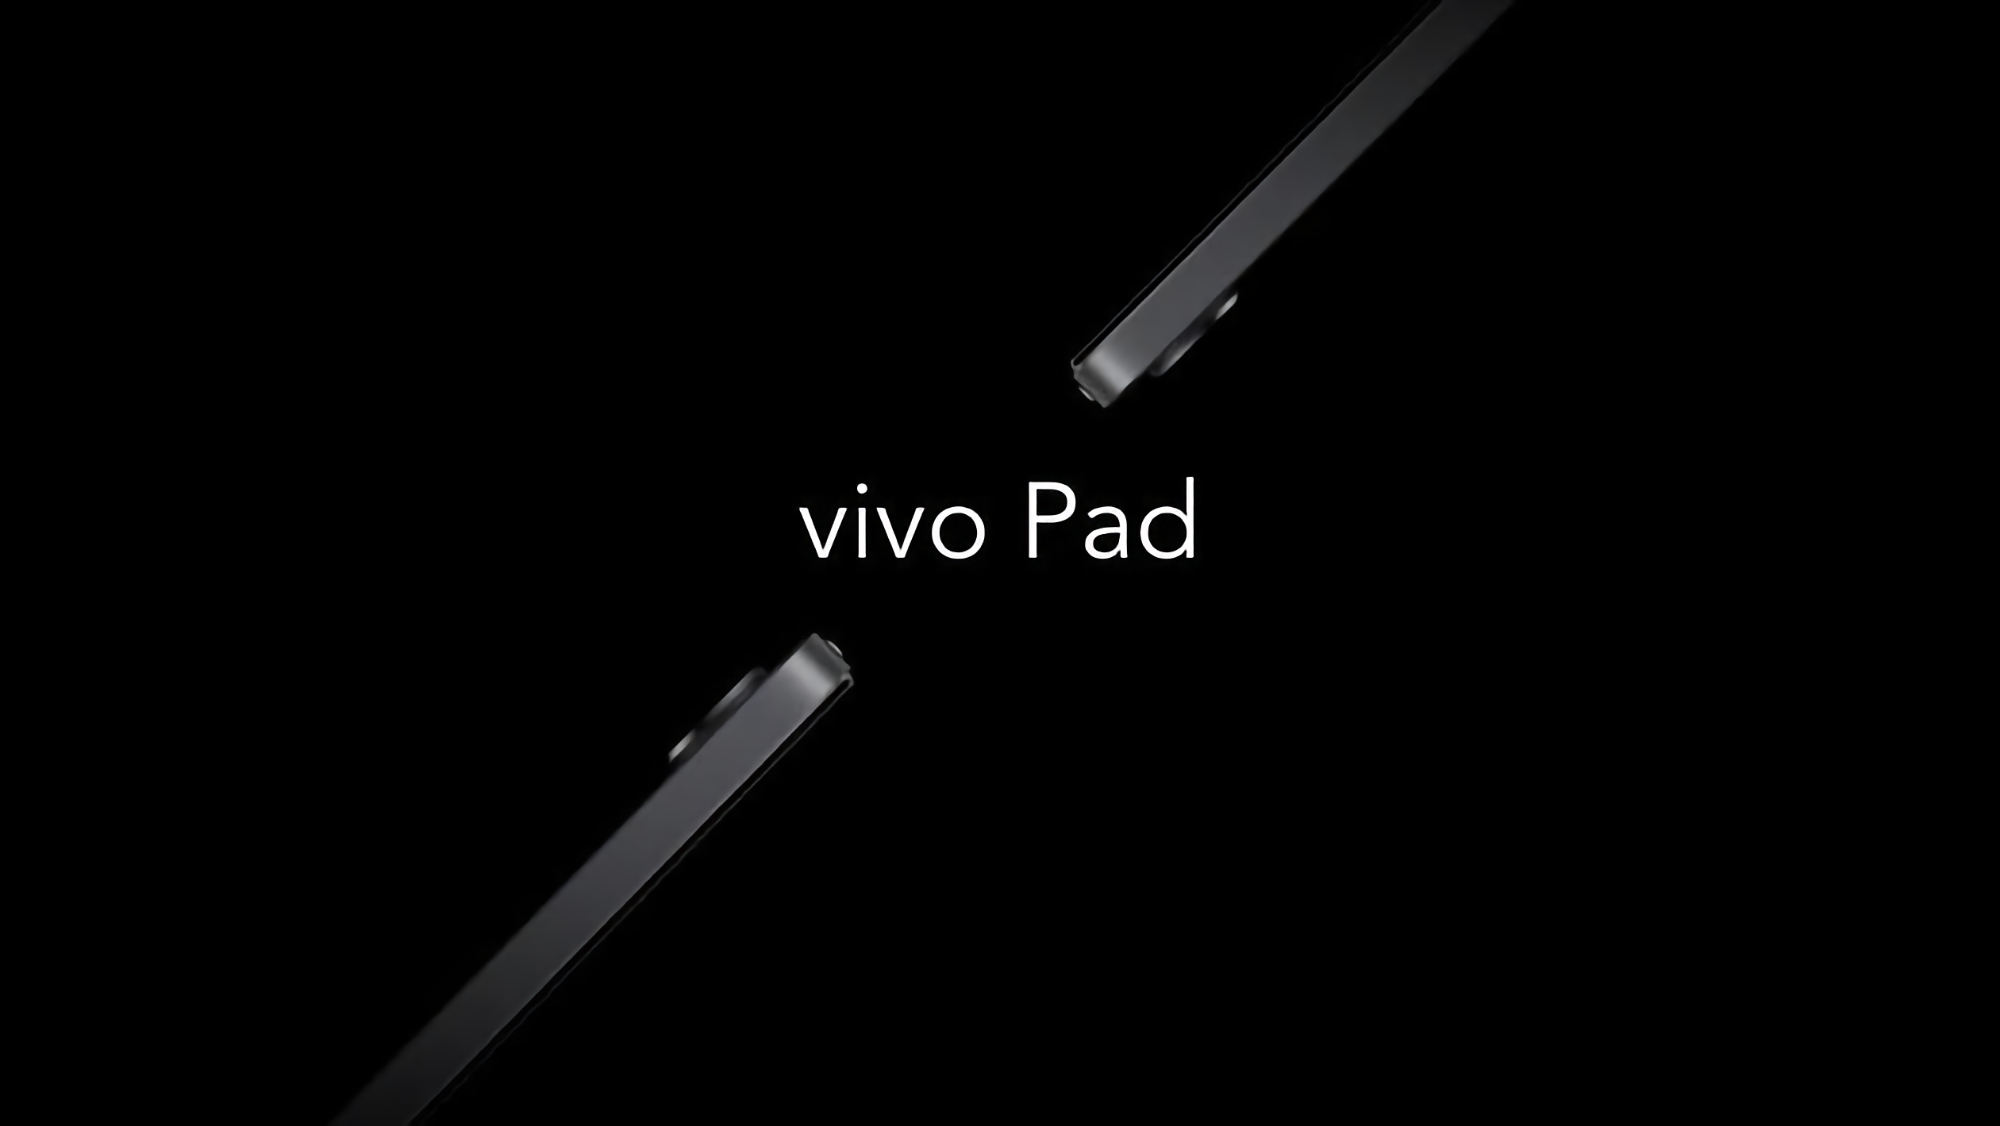 Pantalla de 120 Hz, chip Snapdragon 870 y carga rápida de 44 W: las primeras especificaciones de la tableta de Vivo se filtran en línea